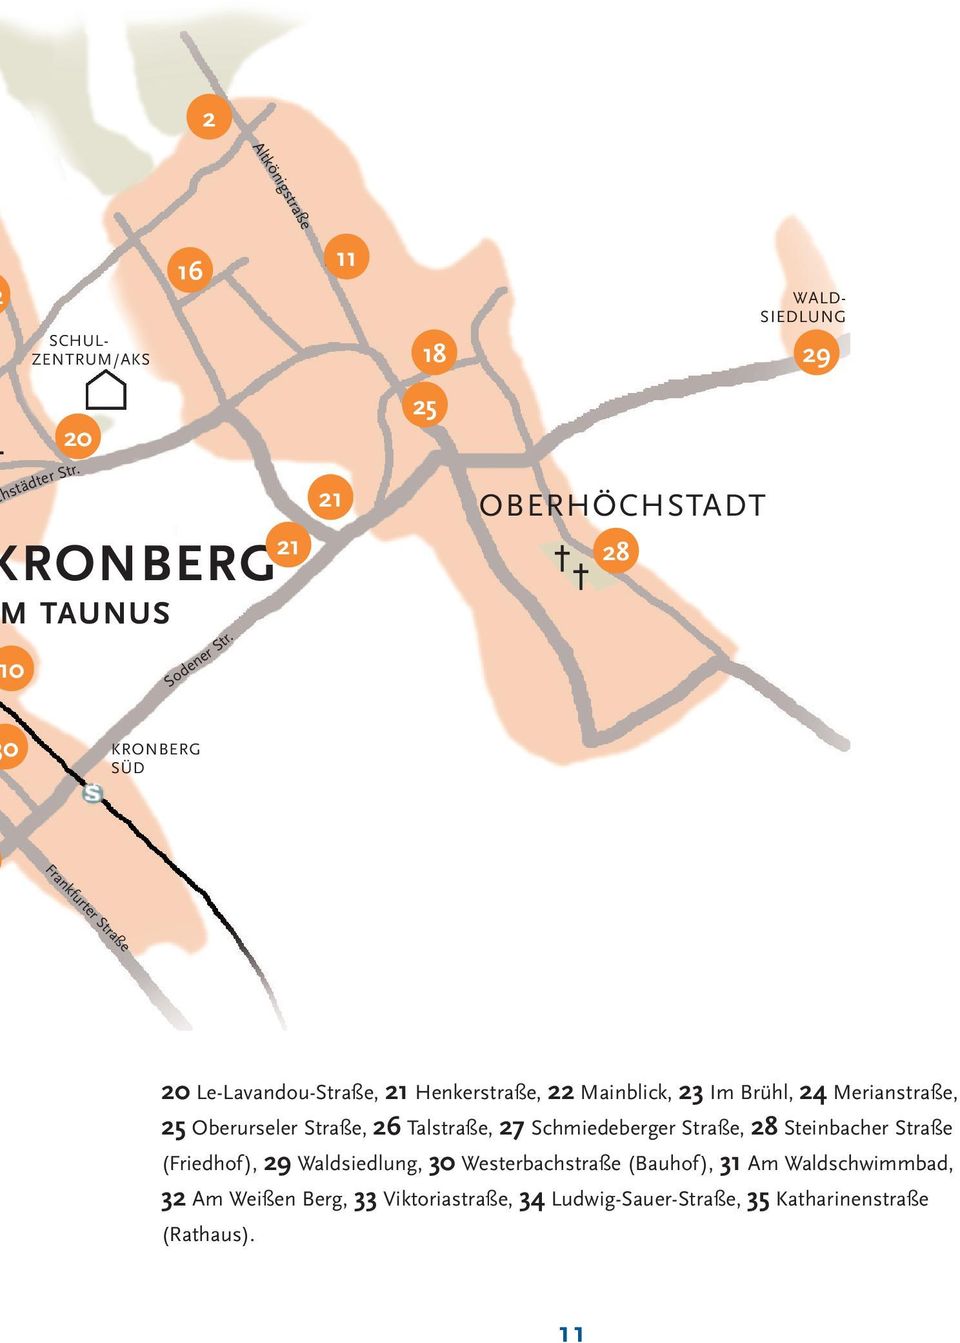 Merianstraße, 25 Oberurseler Straße, 26 Talstraße, 27 Schmiedeberger Straße, 28 Steinbacher Straße (Friedhof), 29 Waldsiedlung, 30